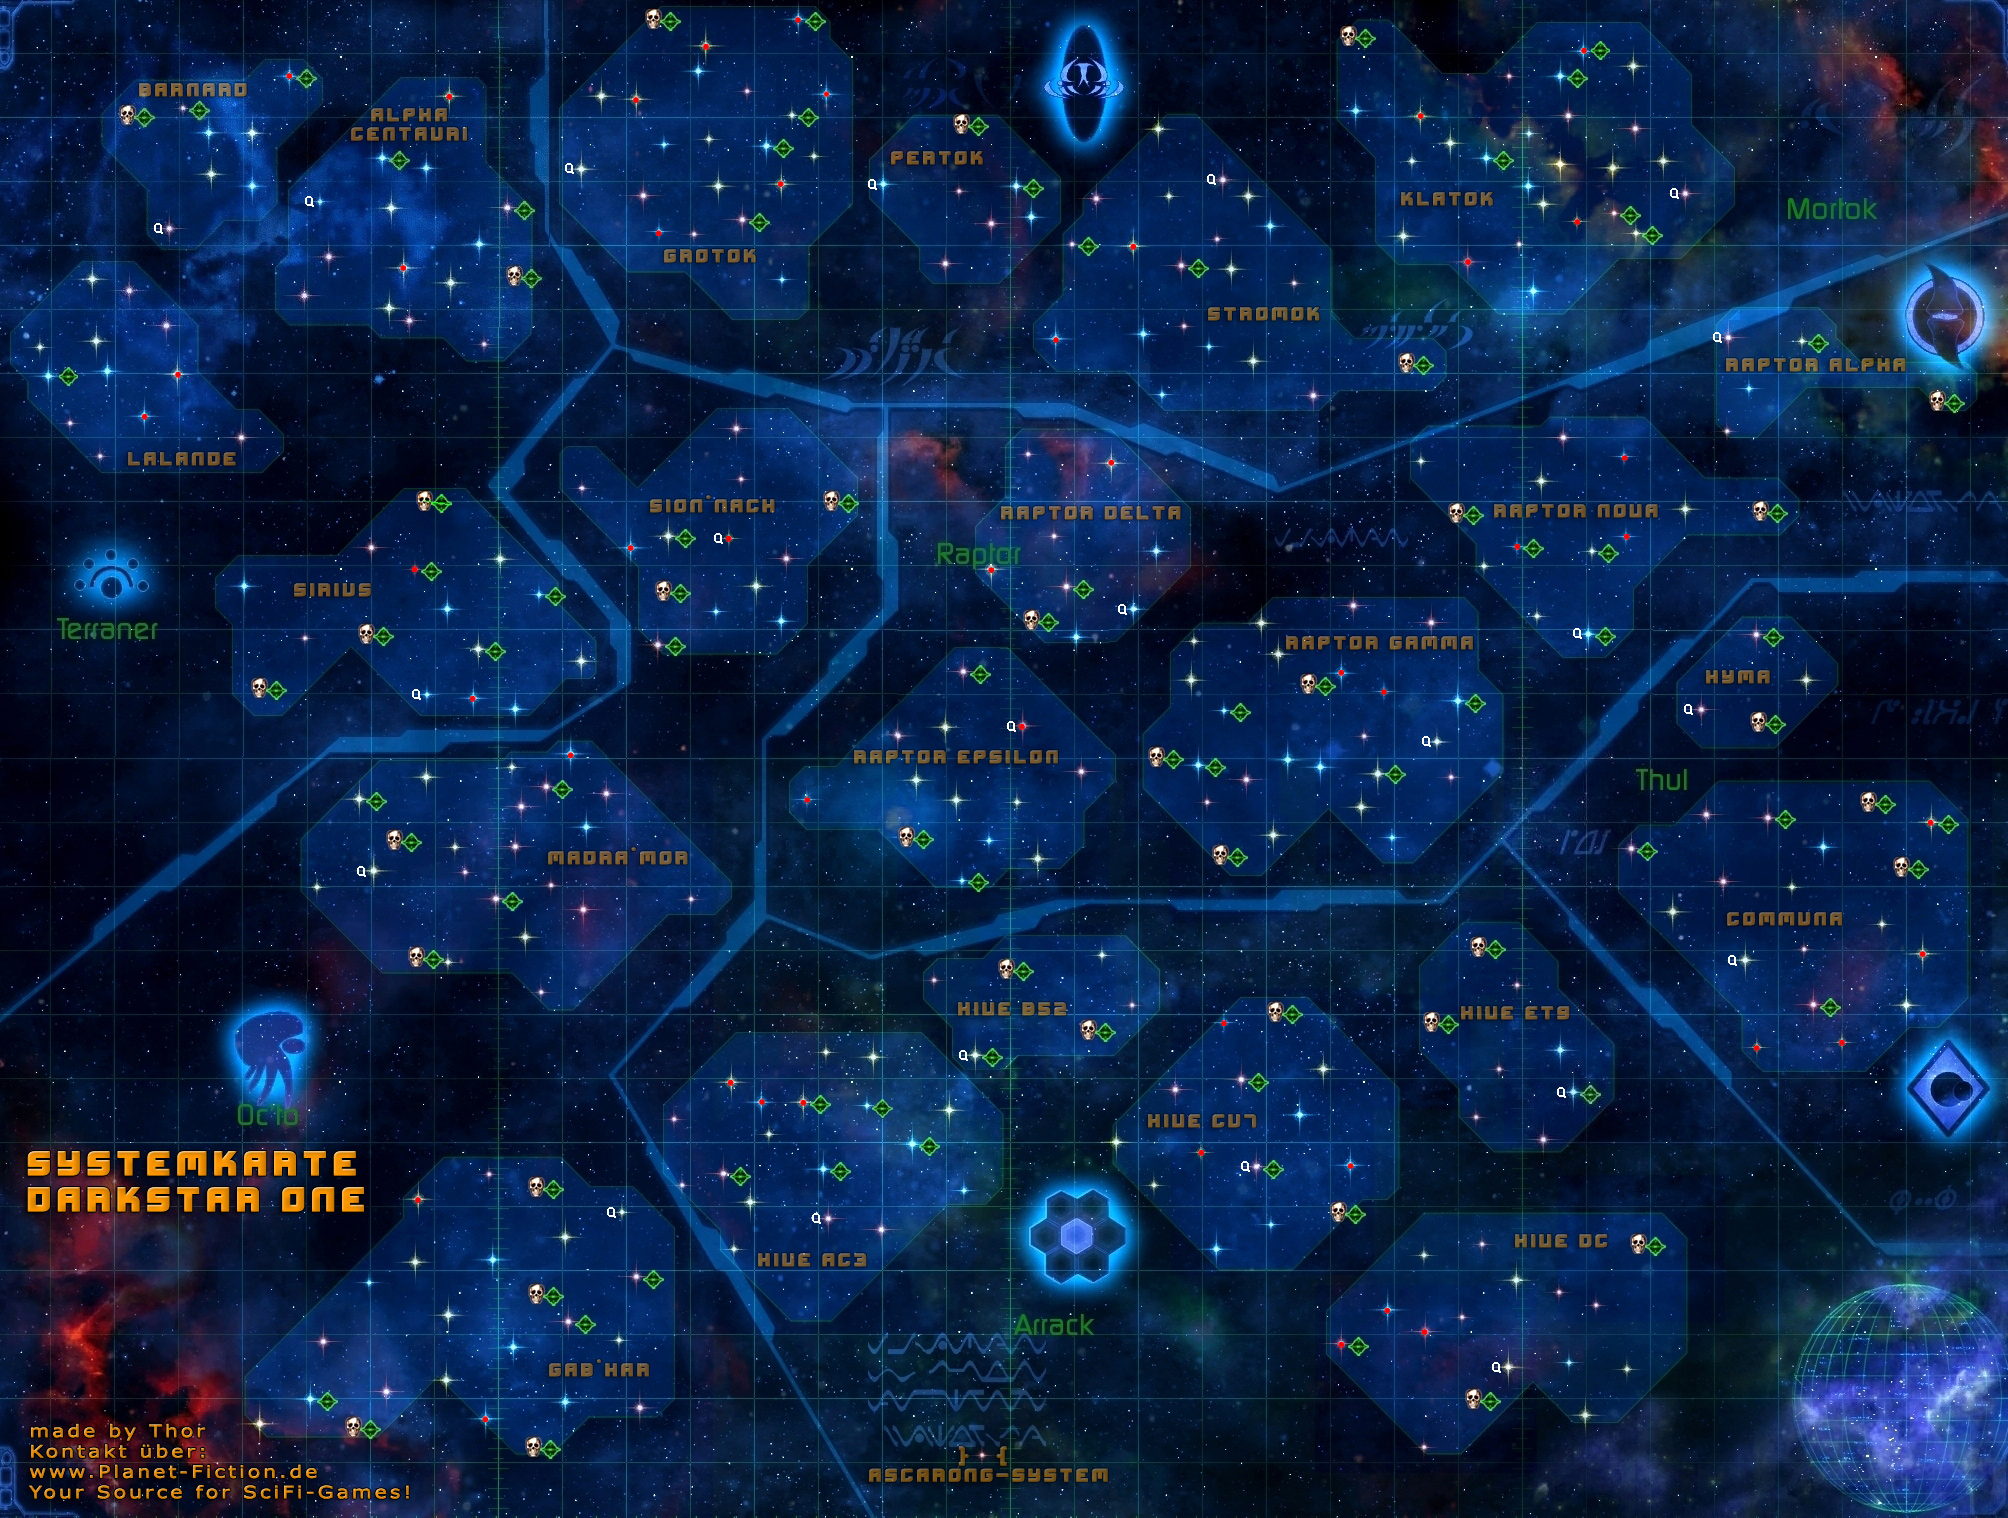 darkstar one maps